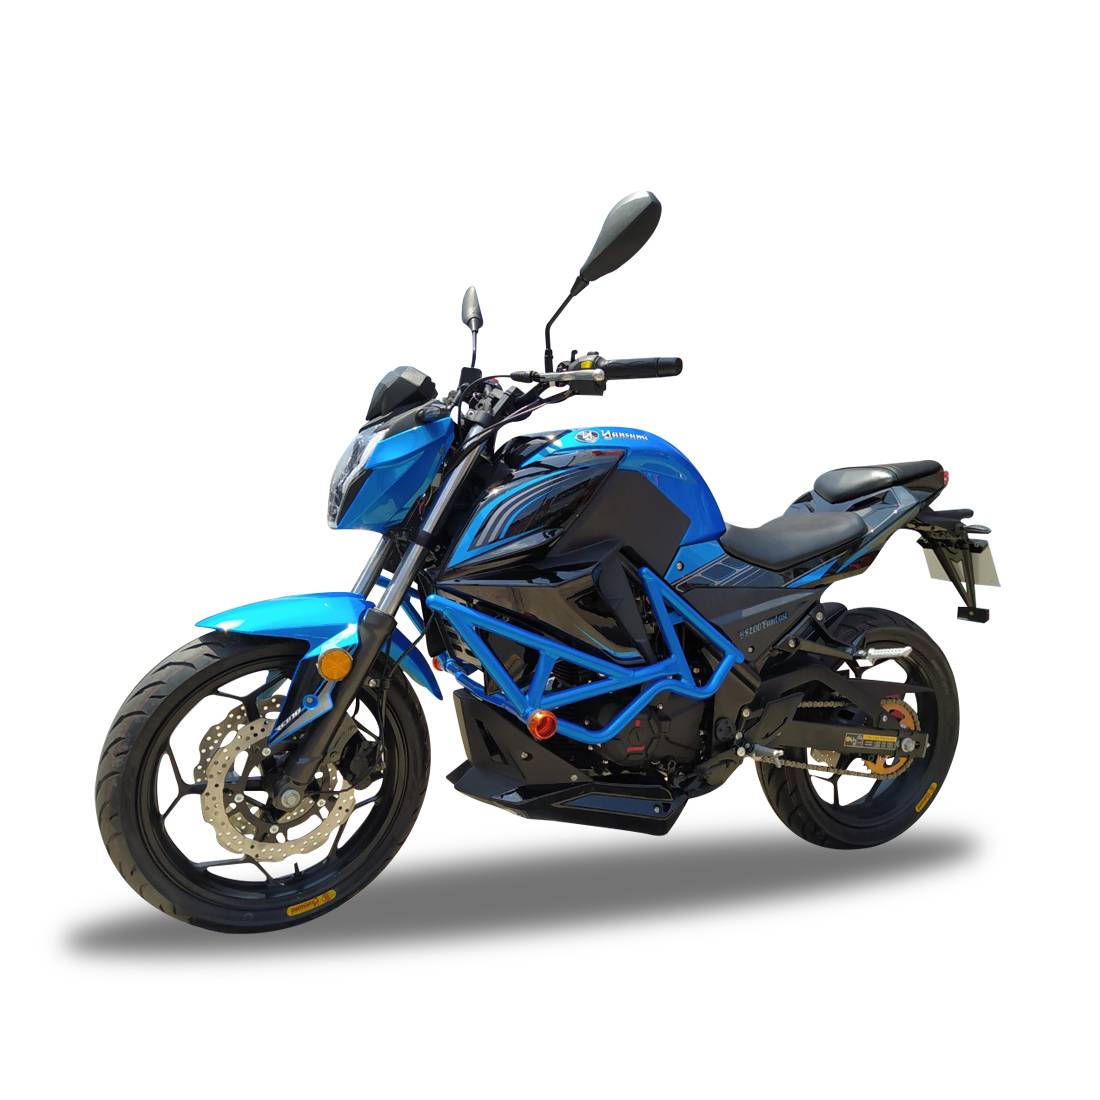 Motocicleta fantasy 200 azul